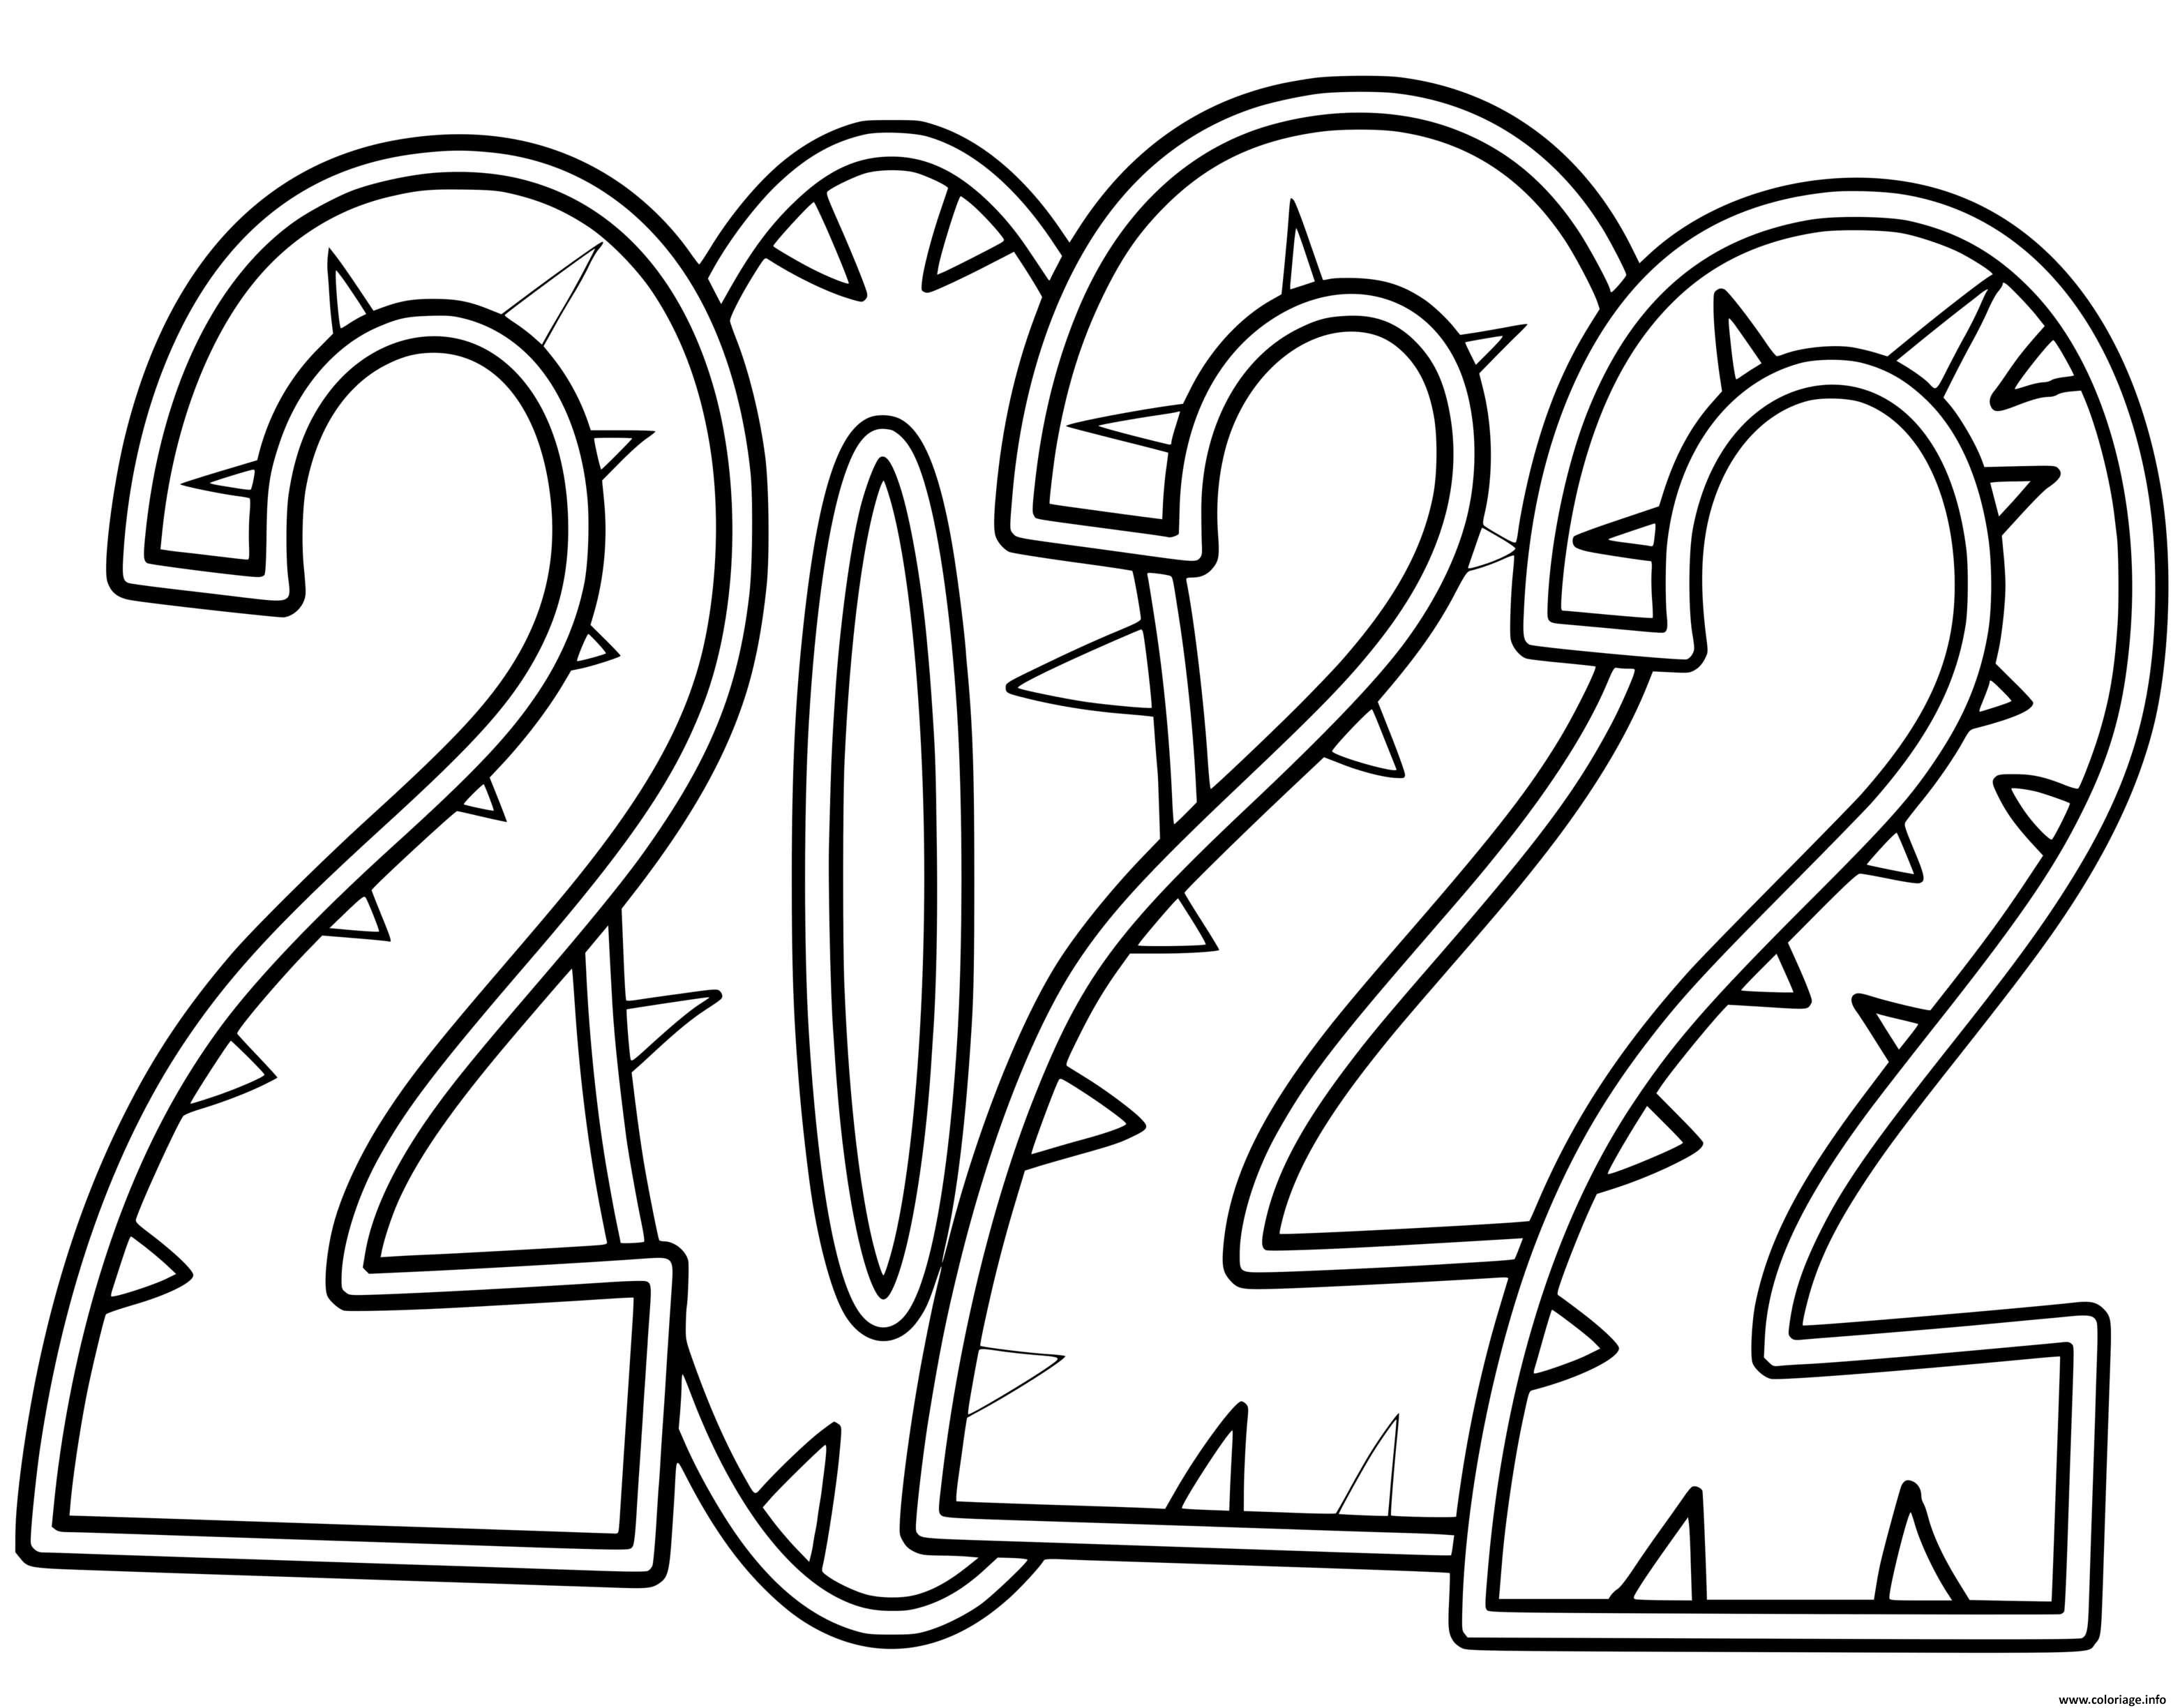 Dessin 2022 doodle by supercoloring Coloriage Gratuit à Imprimer